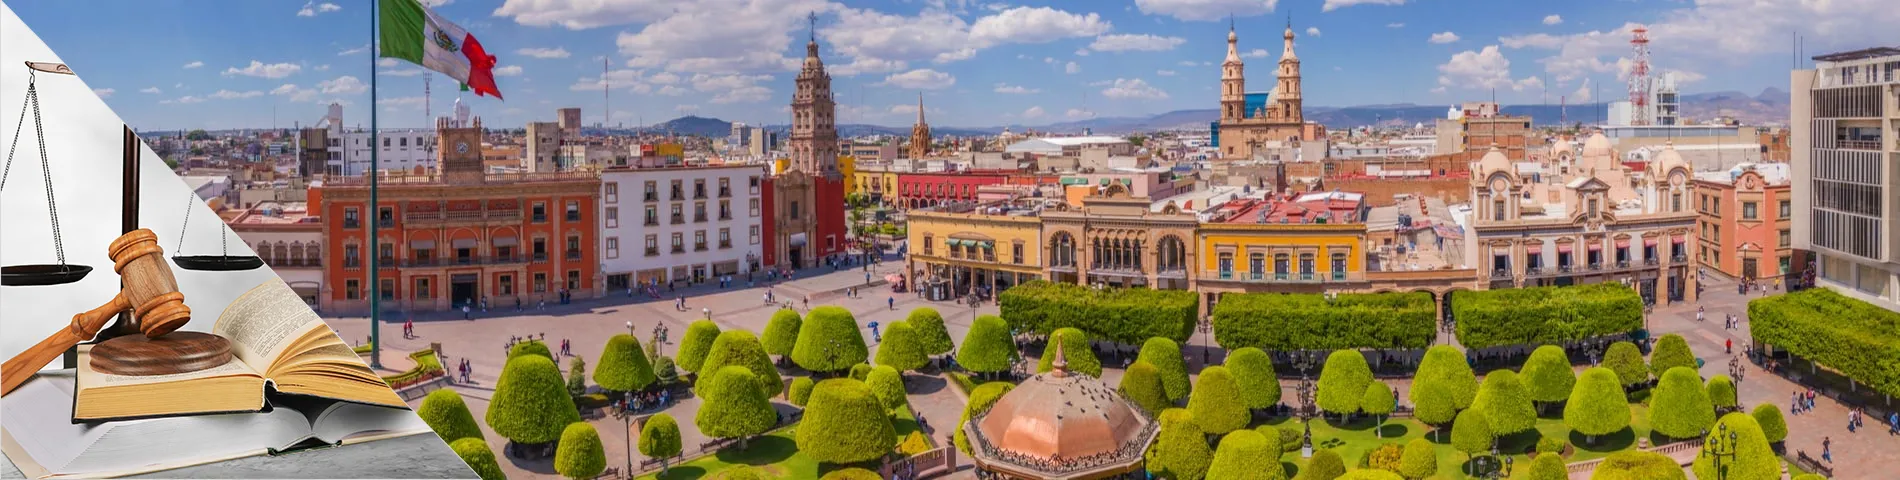 Guanajuato - Spanisch für Juristen & Rechtsanwälte